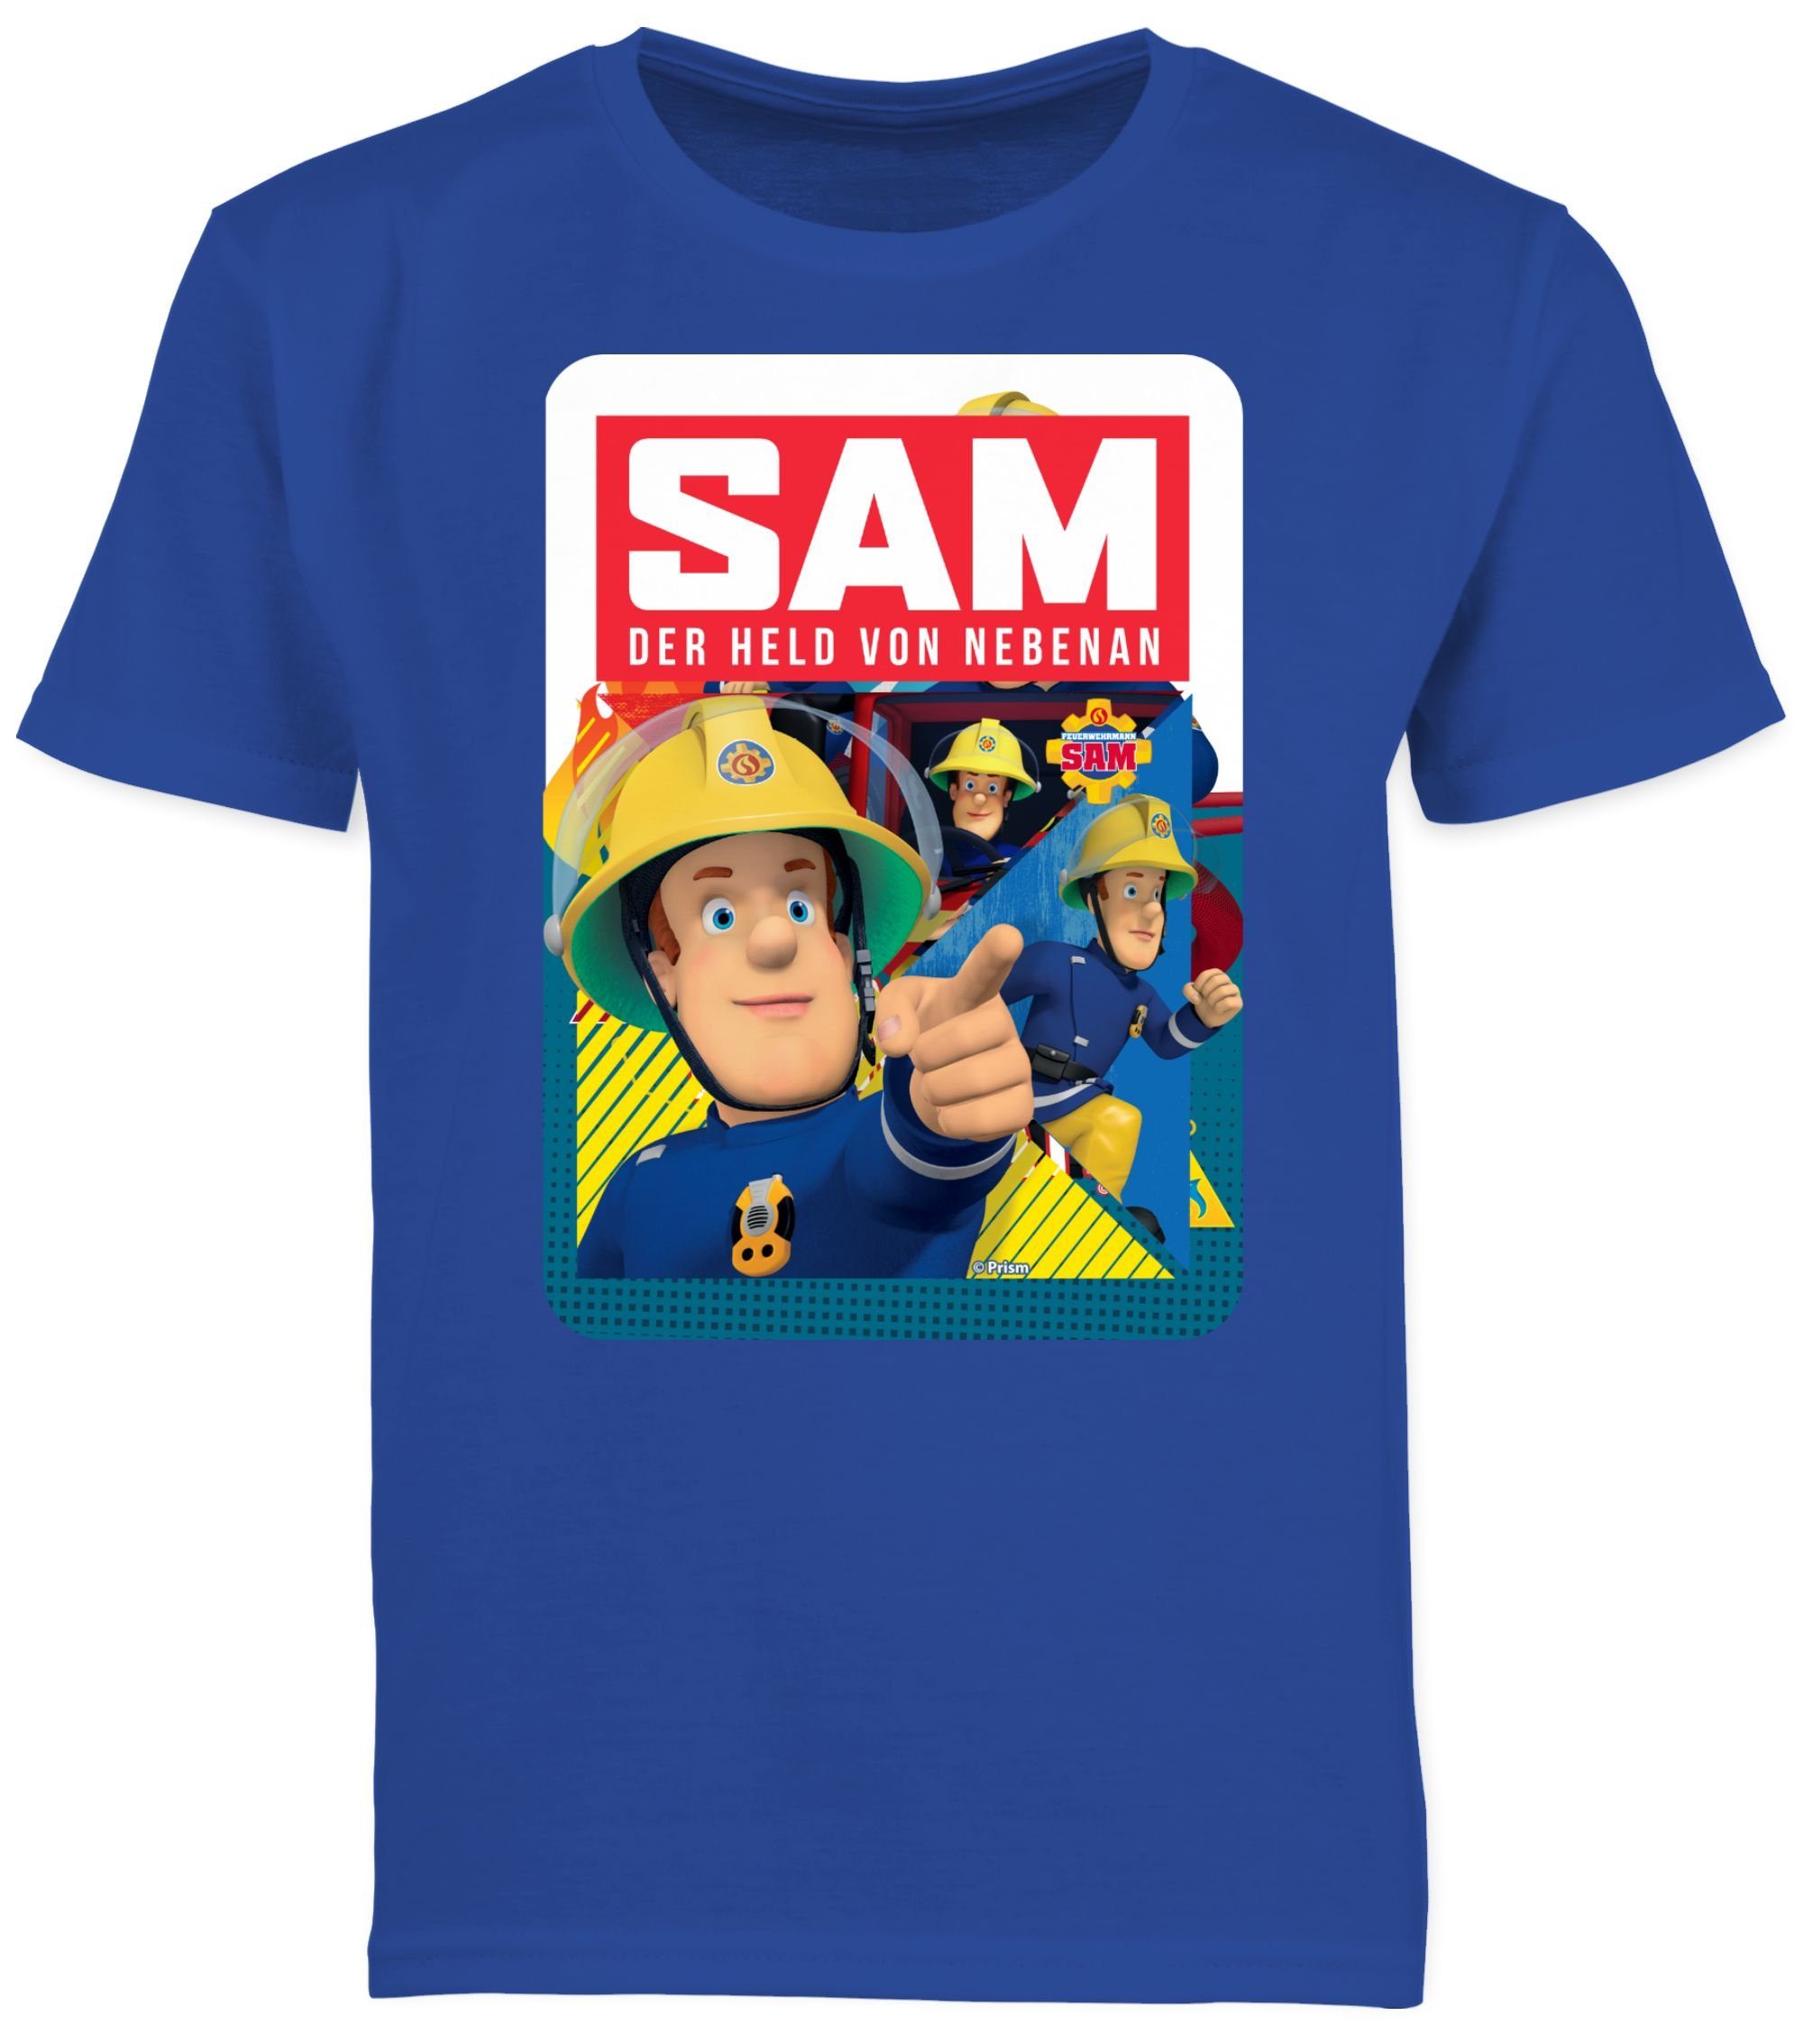 T-Shirt von Jungen 02 Shirtracer Feuerwehrmann Sam Sam Held Royalblau nebenan der